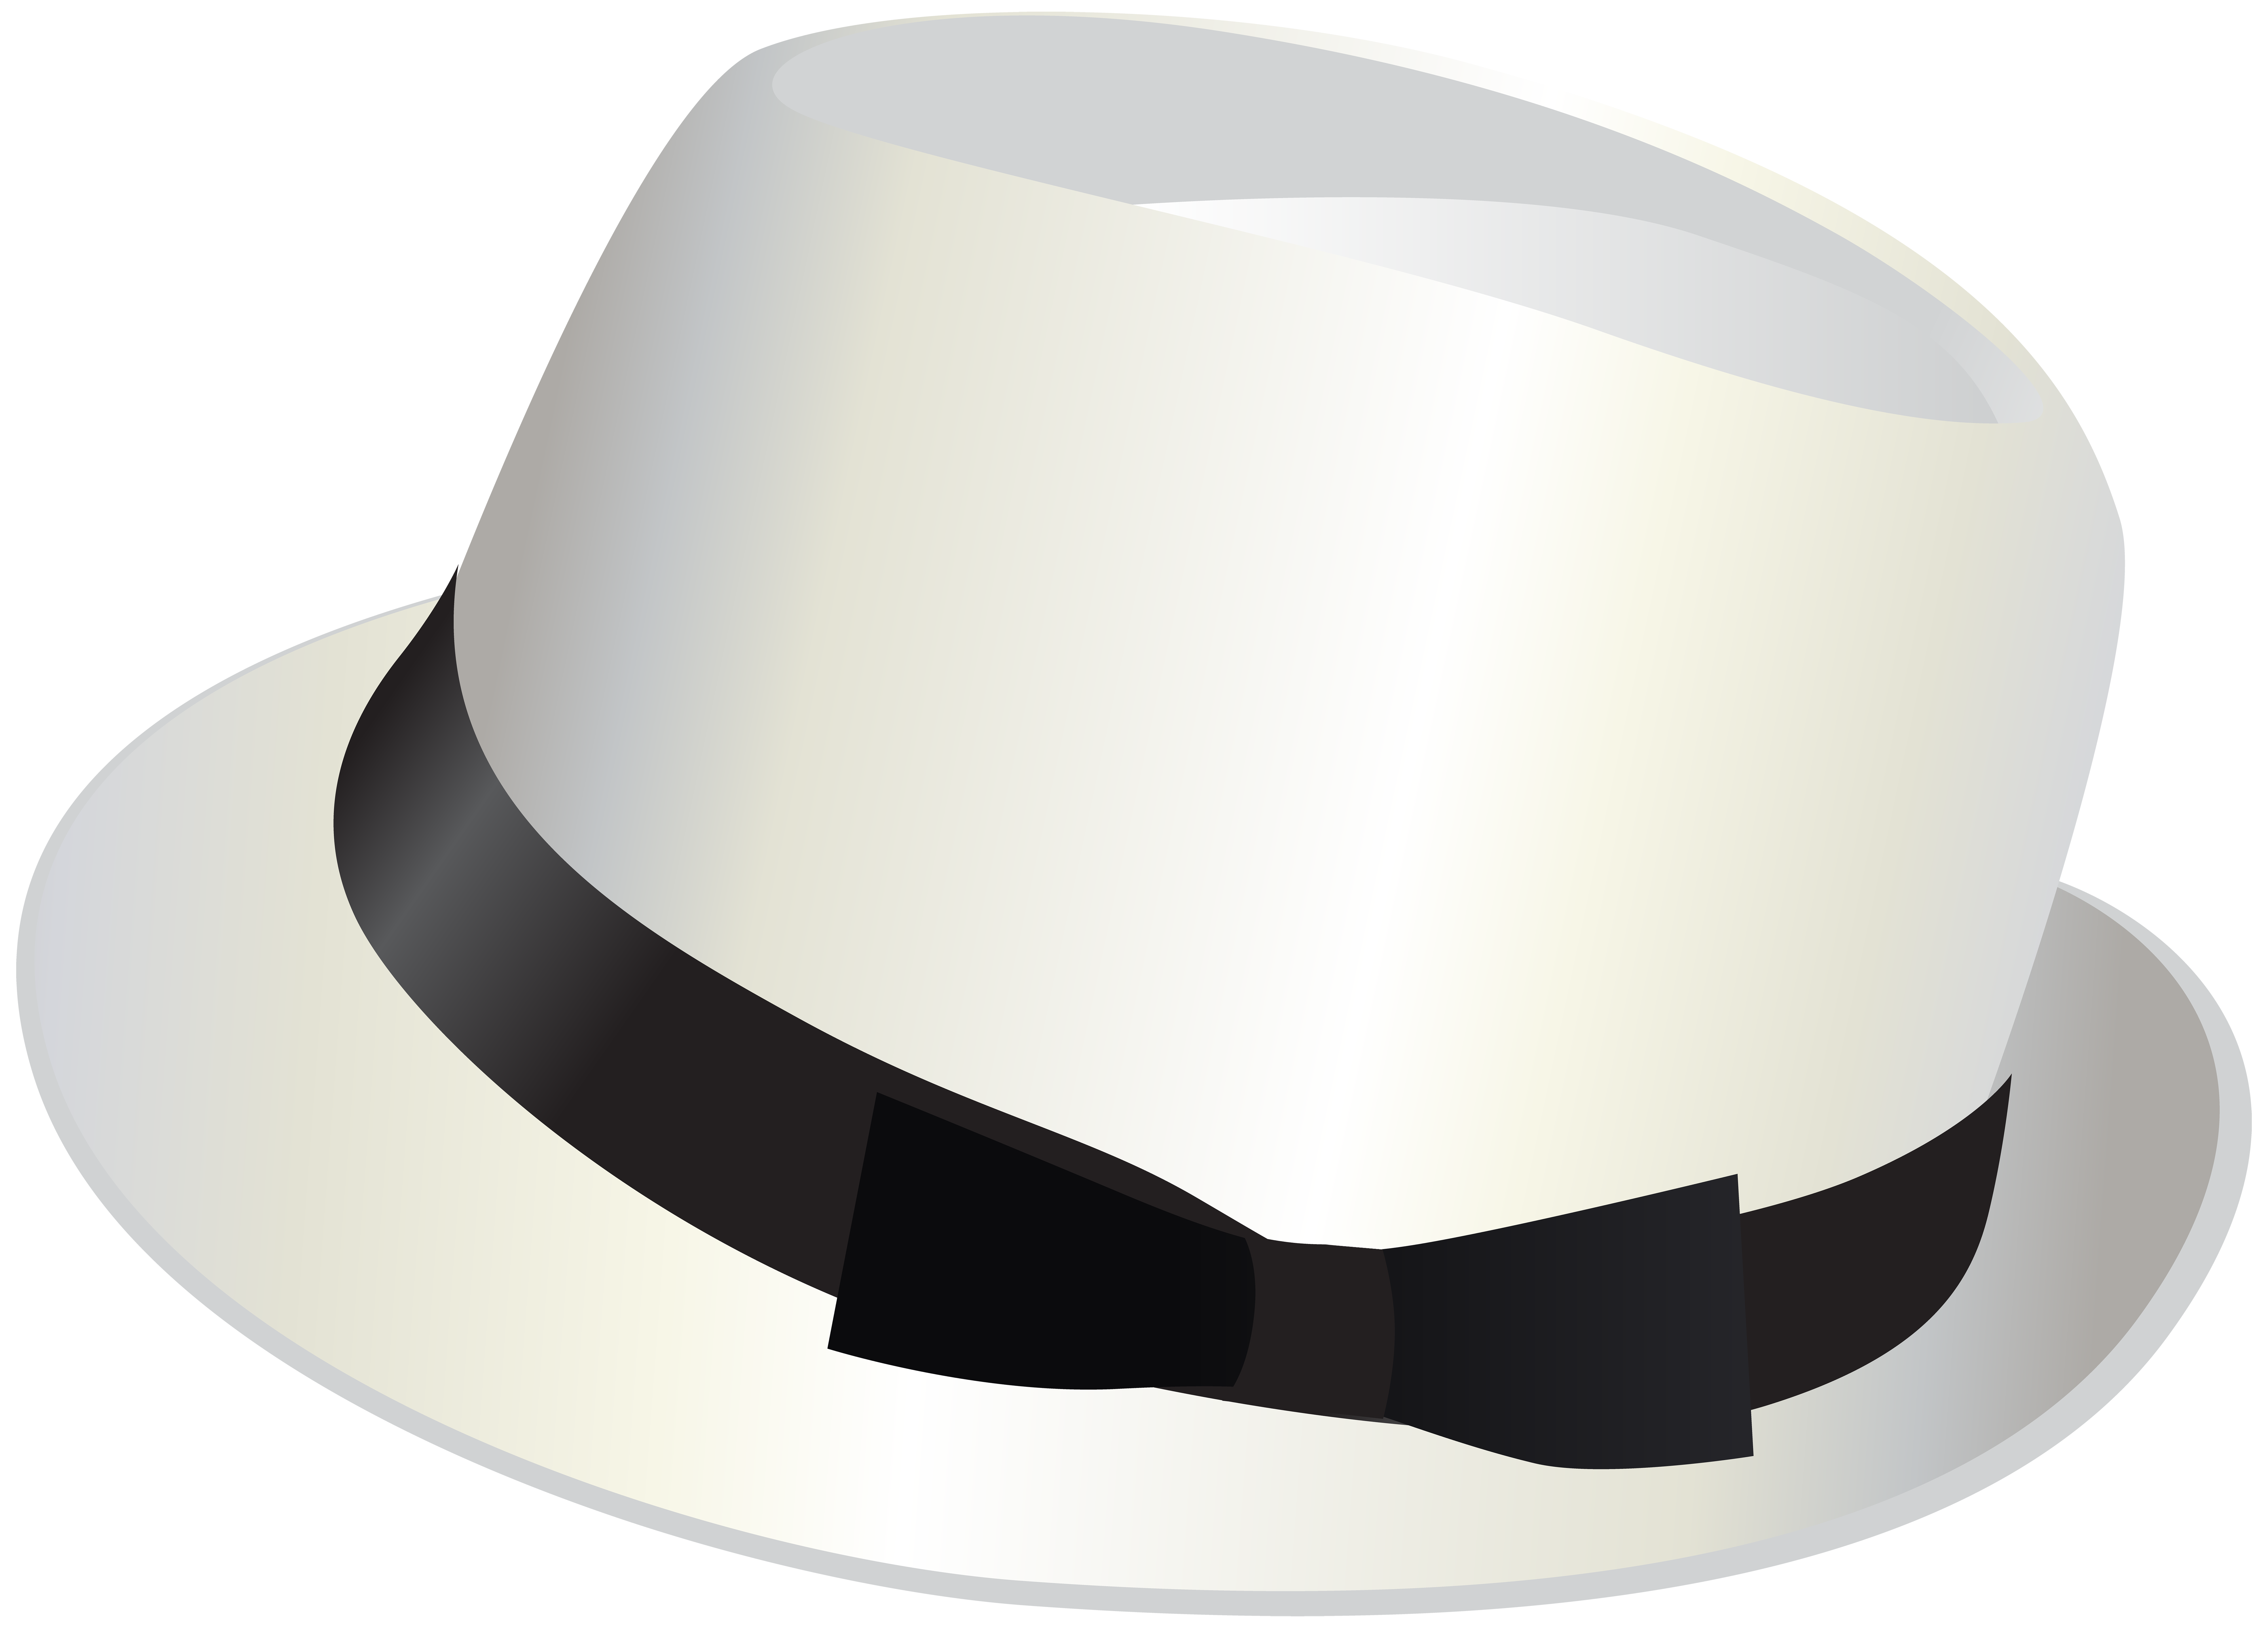 Jeder hat. Шляпа. Цилиндр (головной убор). Шляпа цилиндр белая. Шляпа на белом фоне.